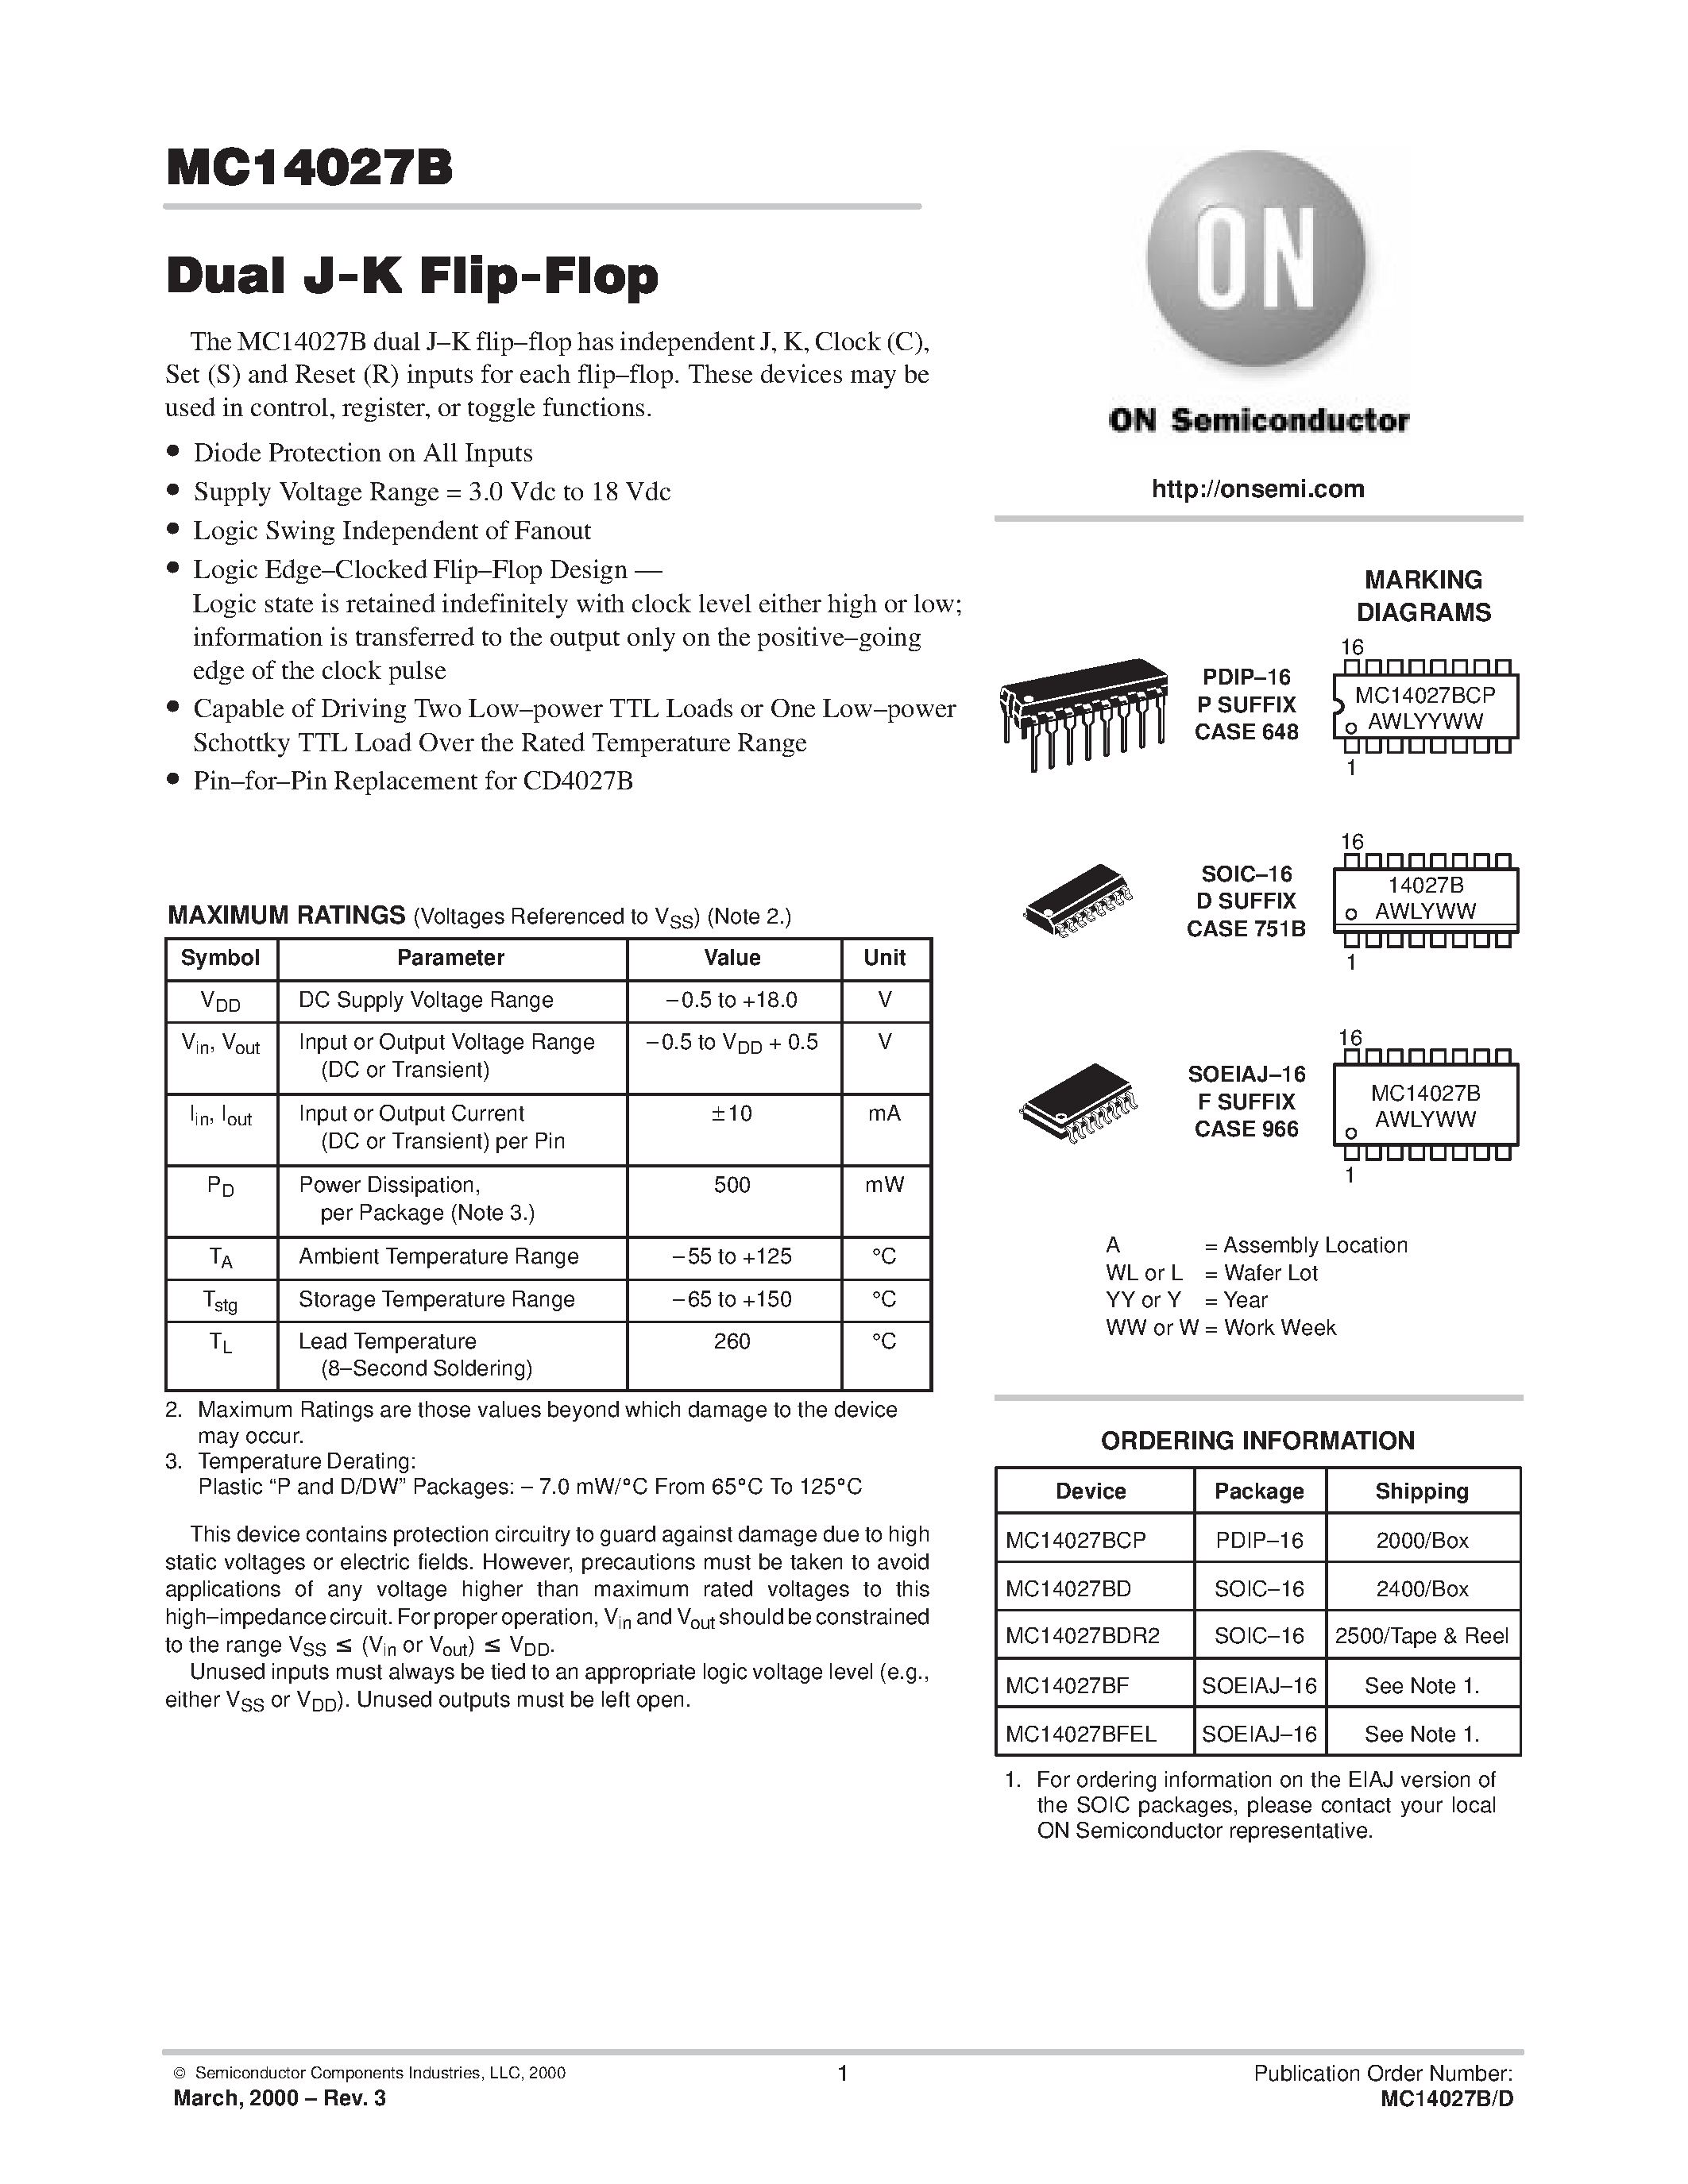 Даташит MC14027BD - Dual J-K Flip-Flop страница 1